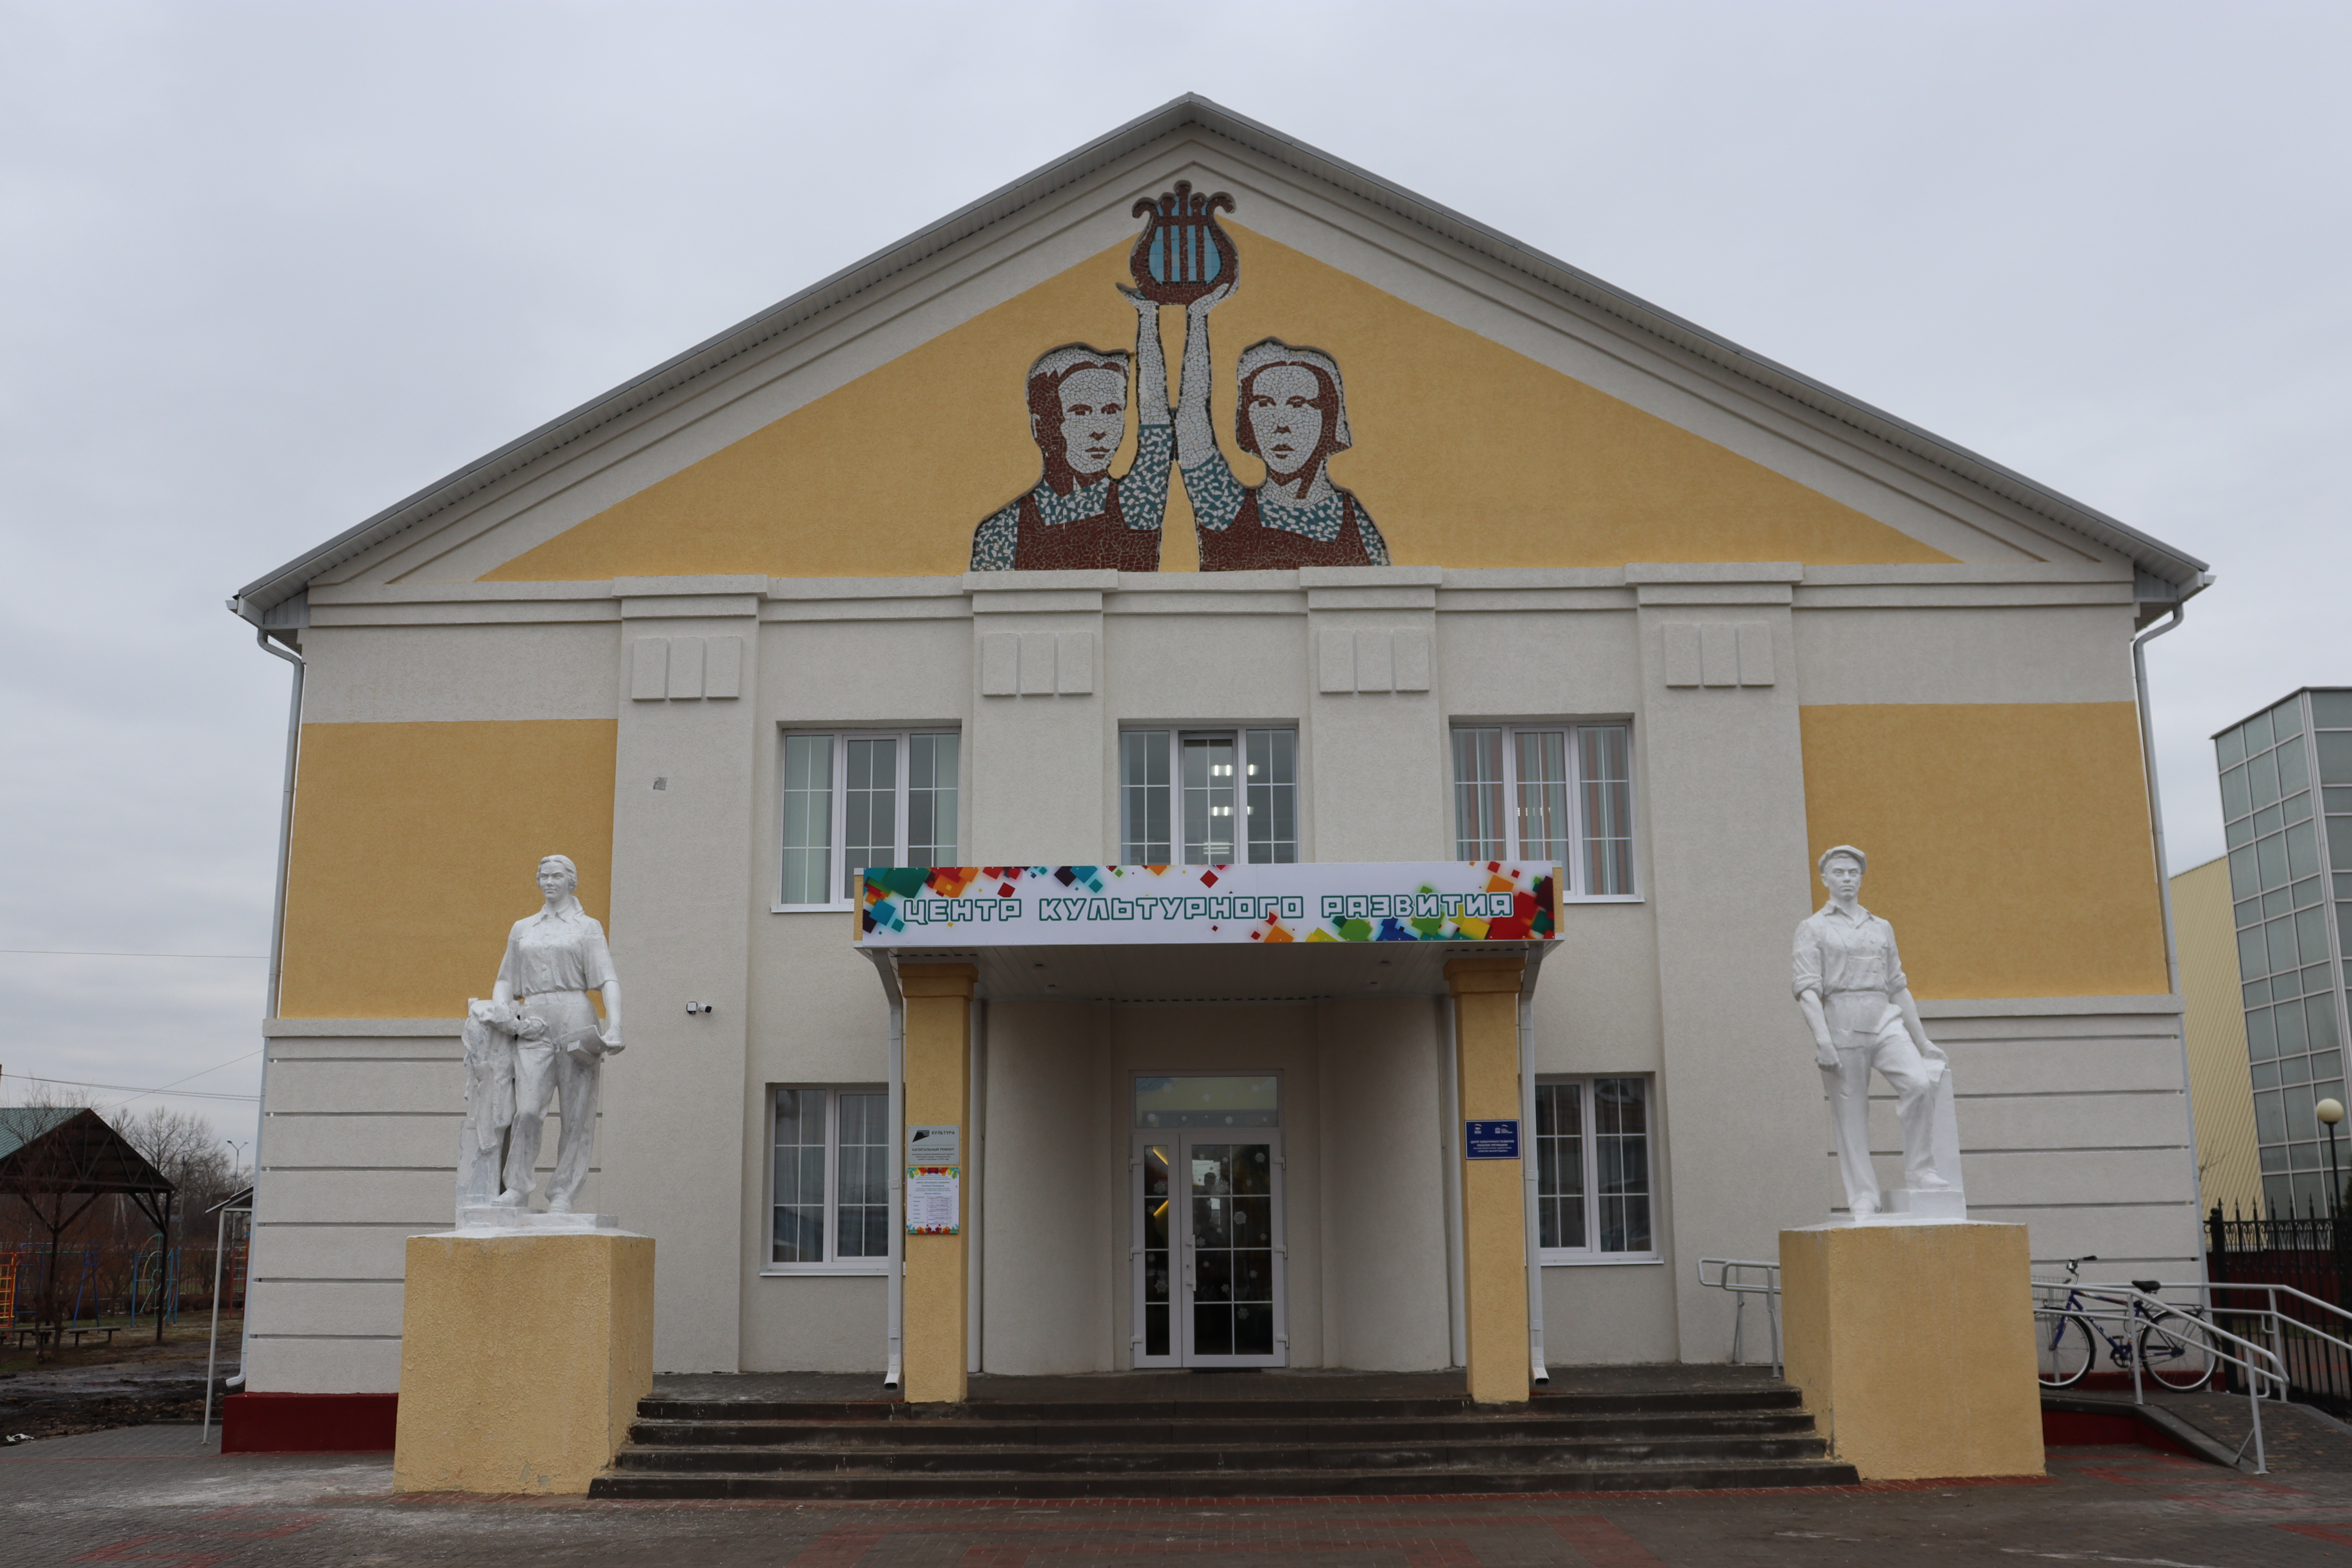 Сегодня обновленный Центр культурного развития поселка Пятницкое гостеприимно распахнул свои двери.